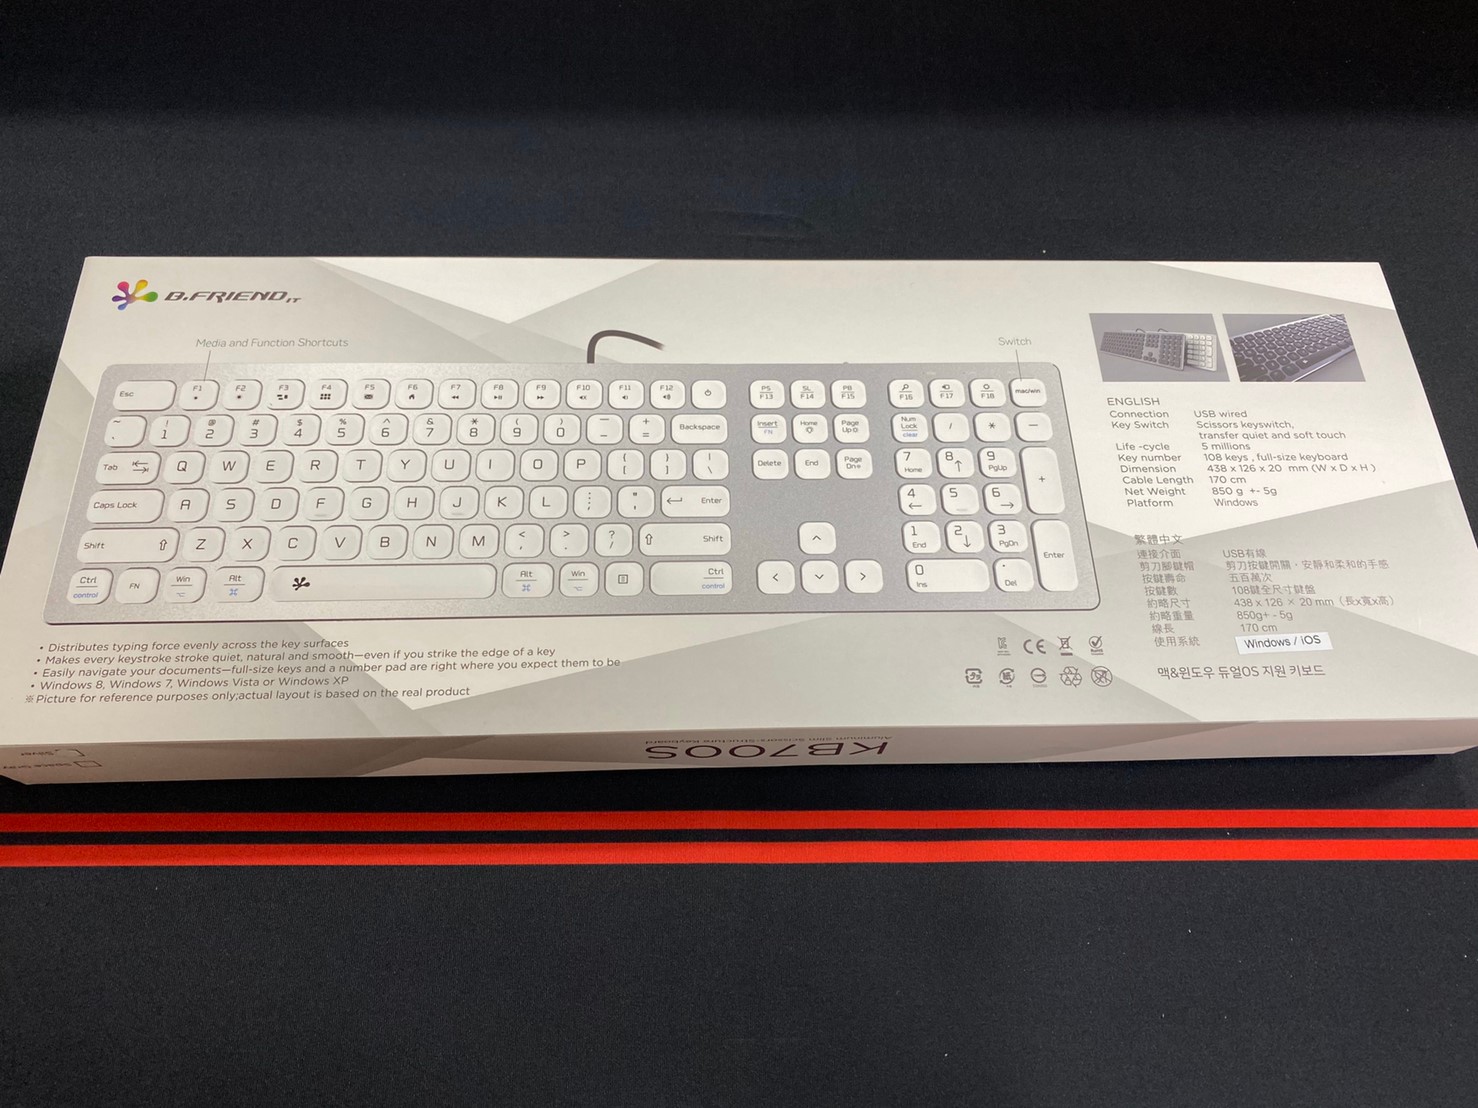 kb700s,辦公鍵盤,靜音,薄,輕,鋁合金,質感,時尚,PC